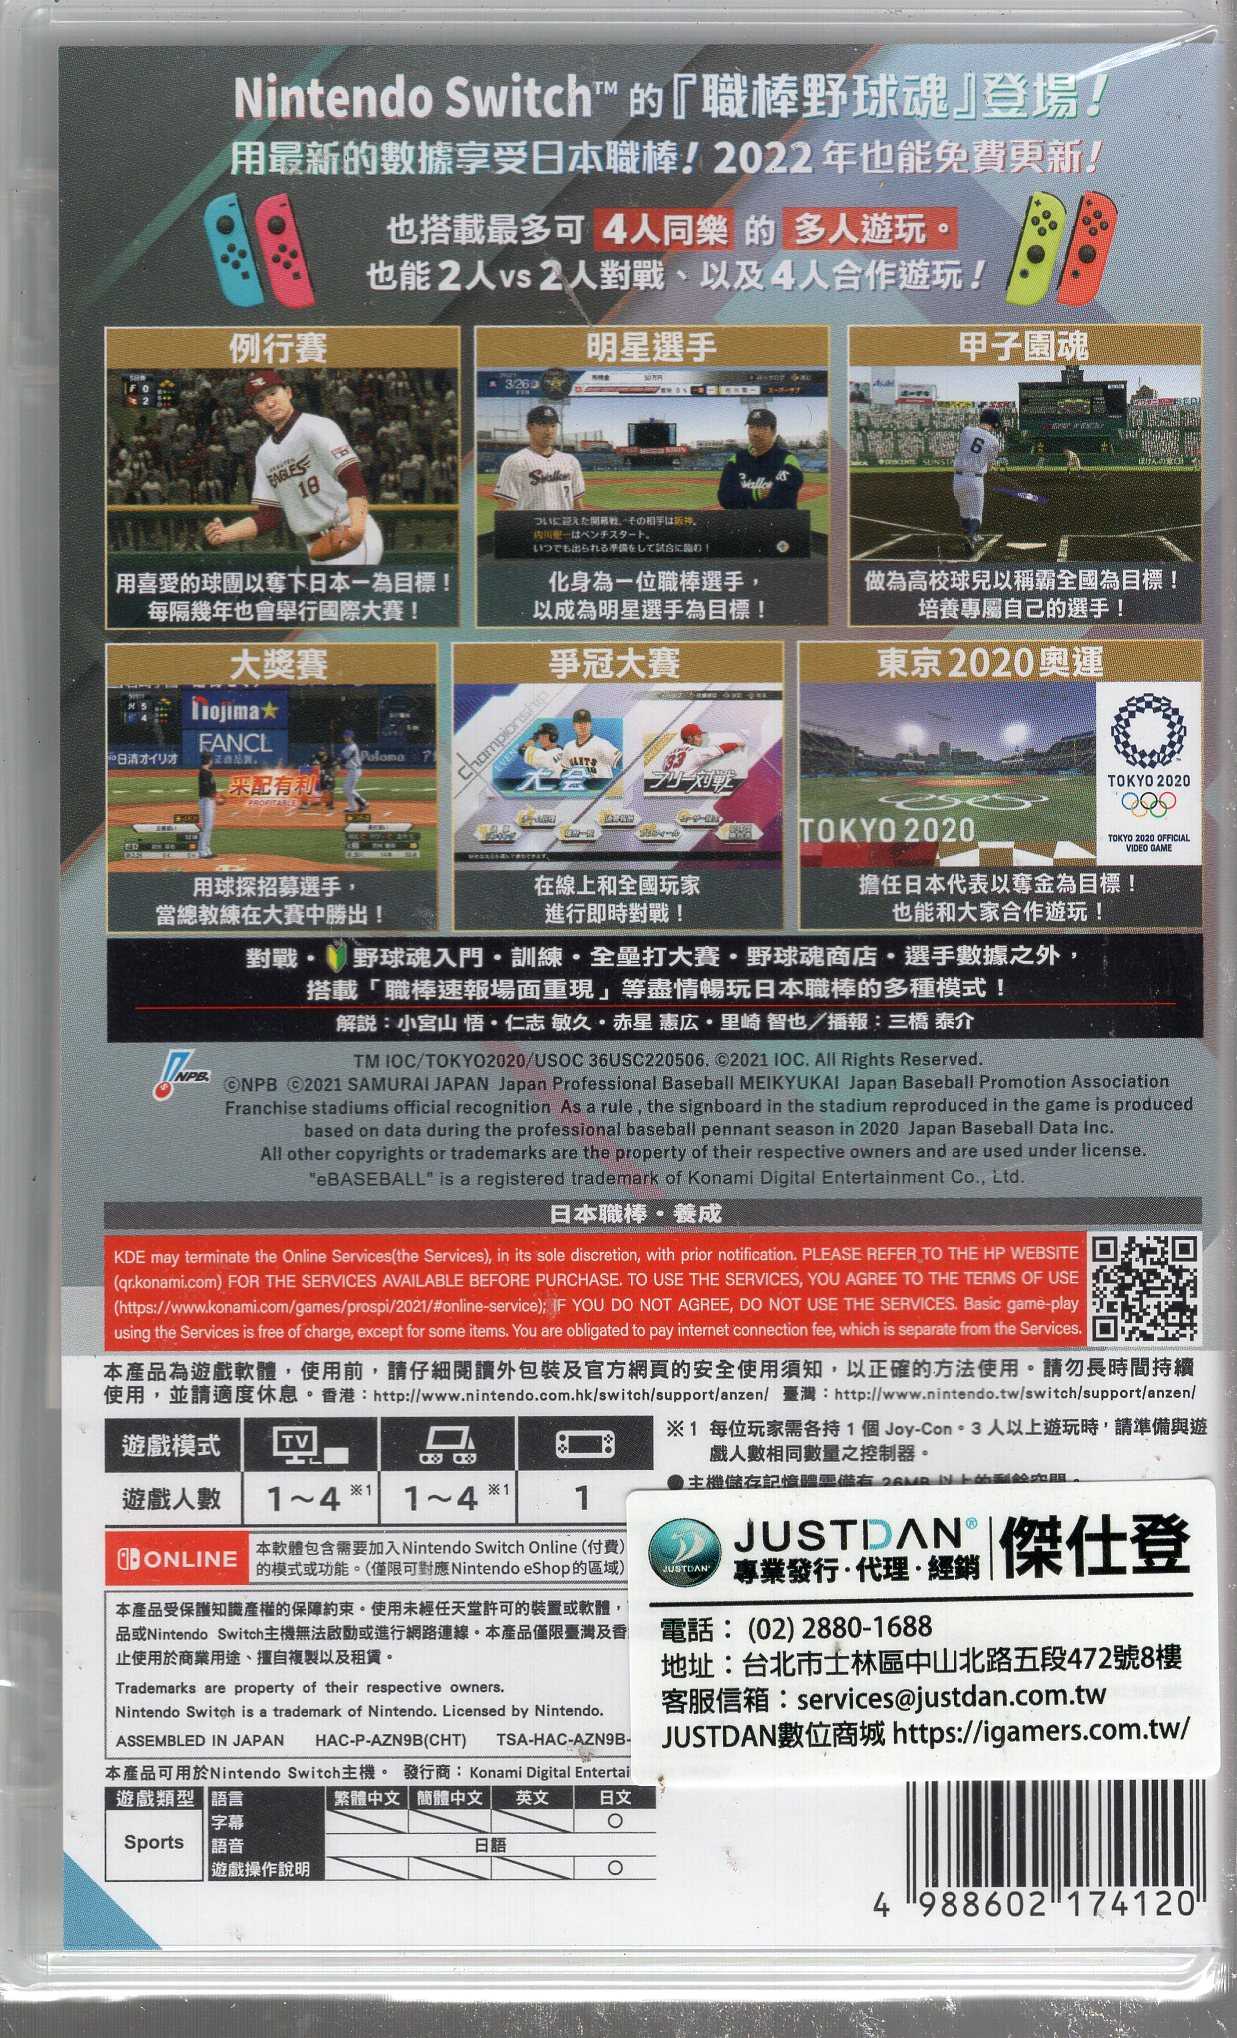 現貨 Switch遊戲 NS eBASEBALL 職棒野球魂 2021 大滿貫 中文版【板橋魔力】